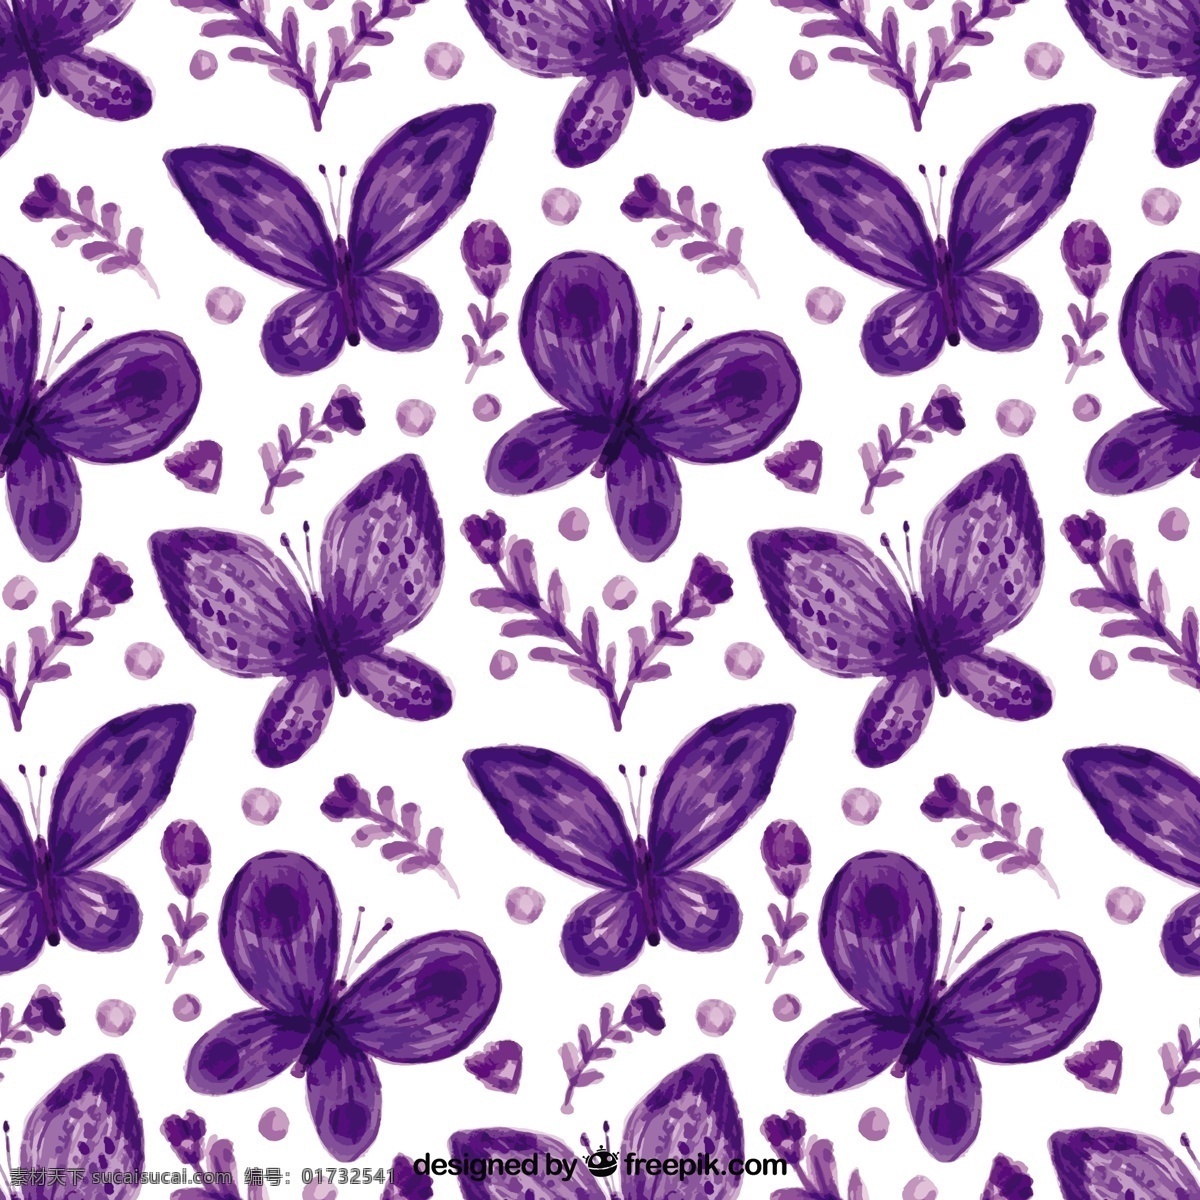 紫色 花 水彩 蝴蝶 美丽 图案 背景 花卉 自然 花卉背景 动物 花卉图案 水彩背景 颜色 无缝模式 自然背景 装饰 图案背景 飞行 无缝